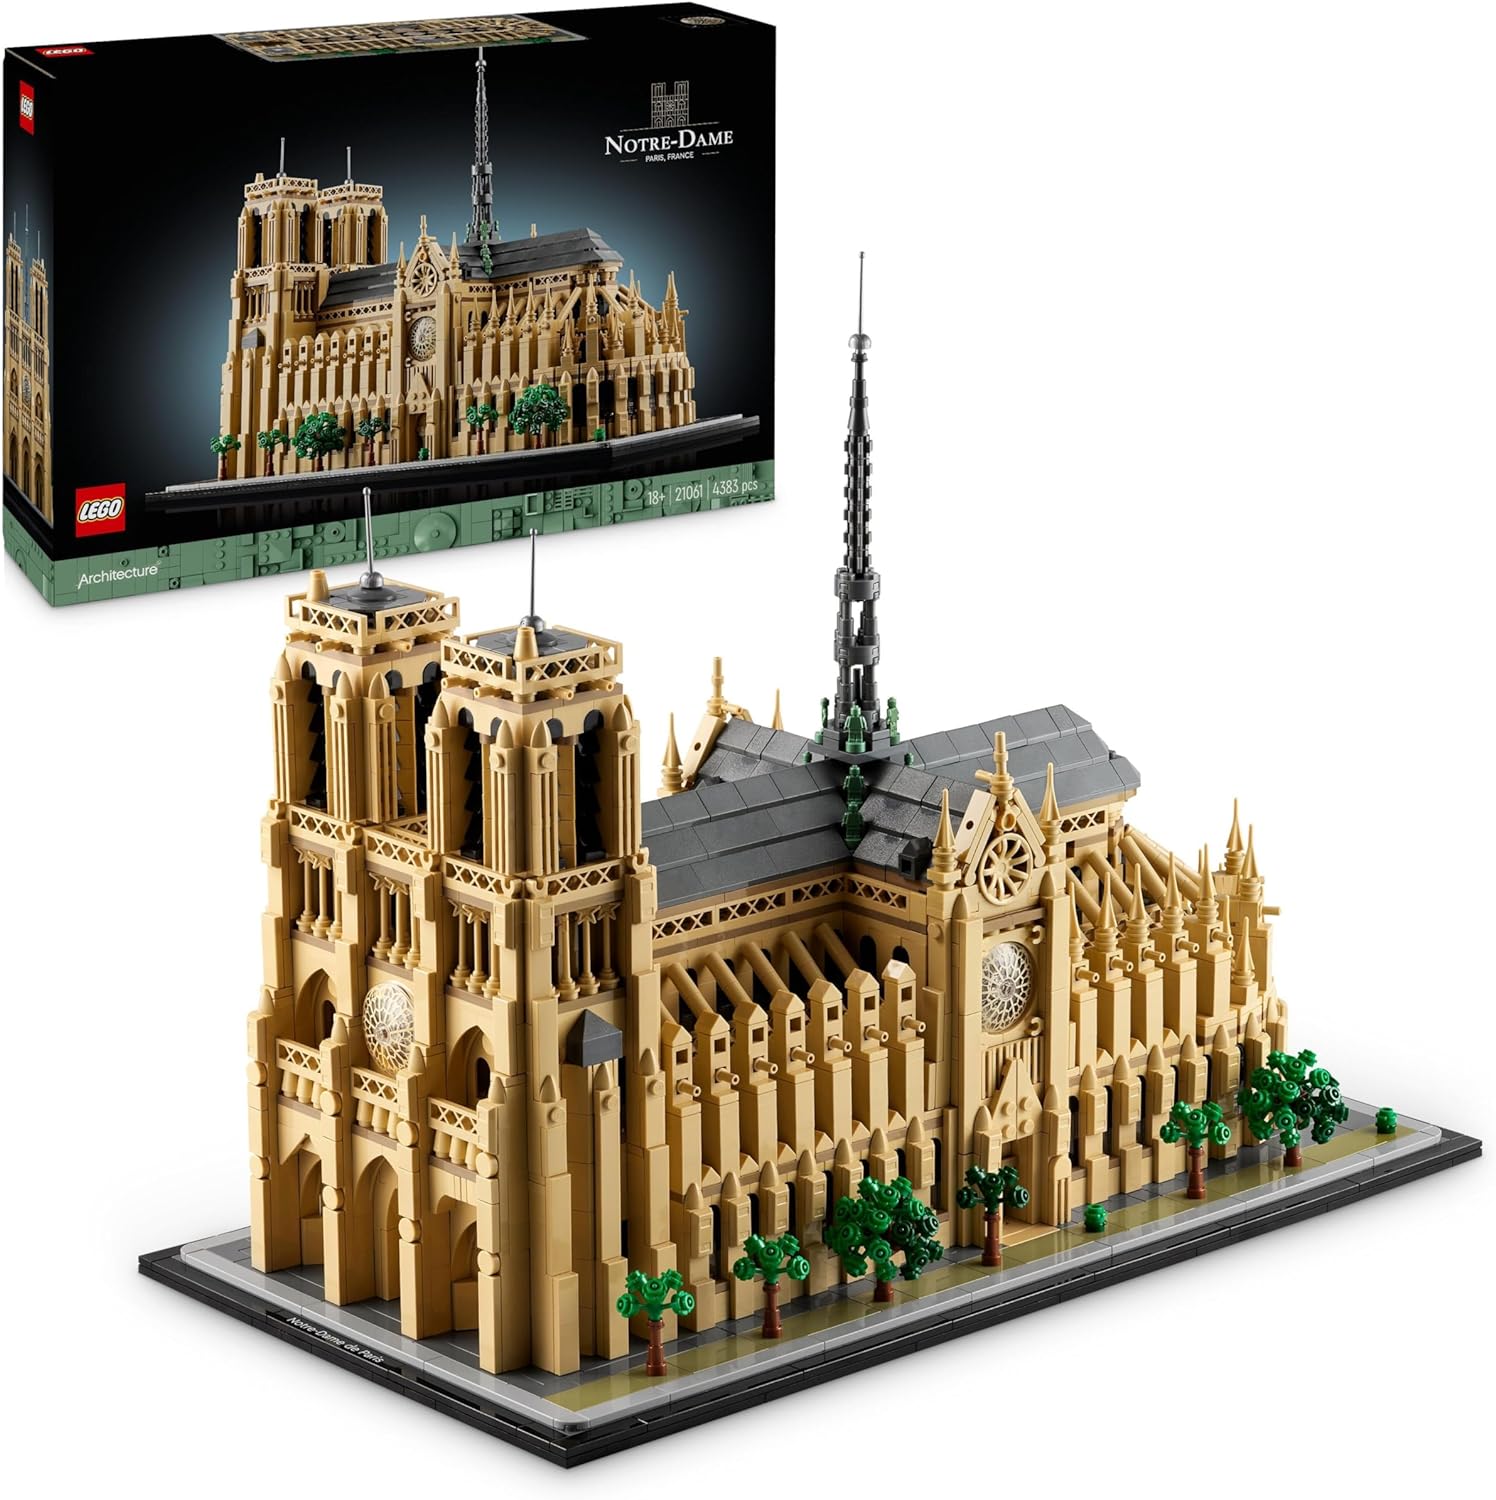 LEGO 21061 NOTRE DAME DE PARIS ARCHITECTURE